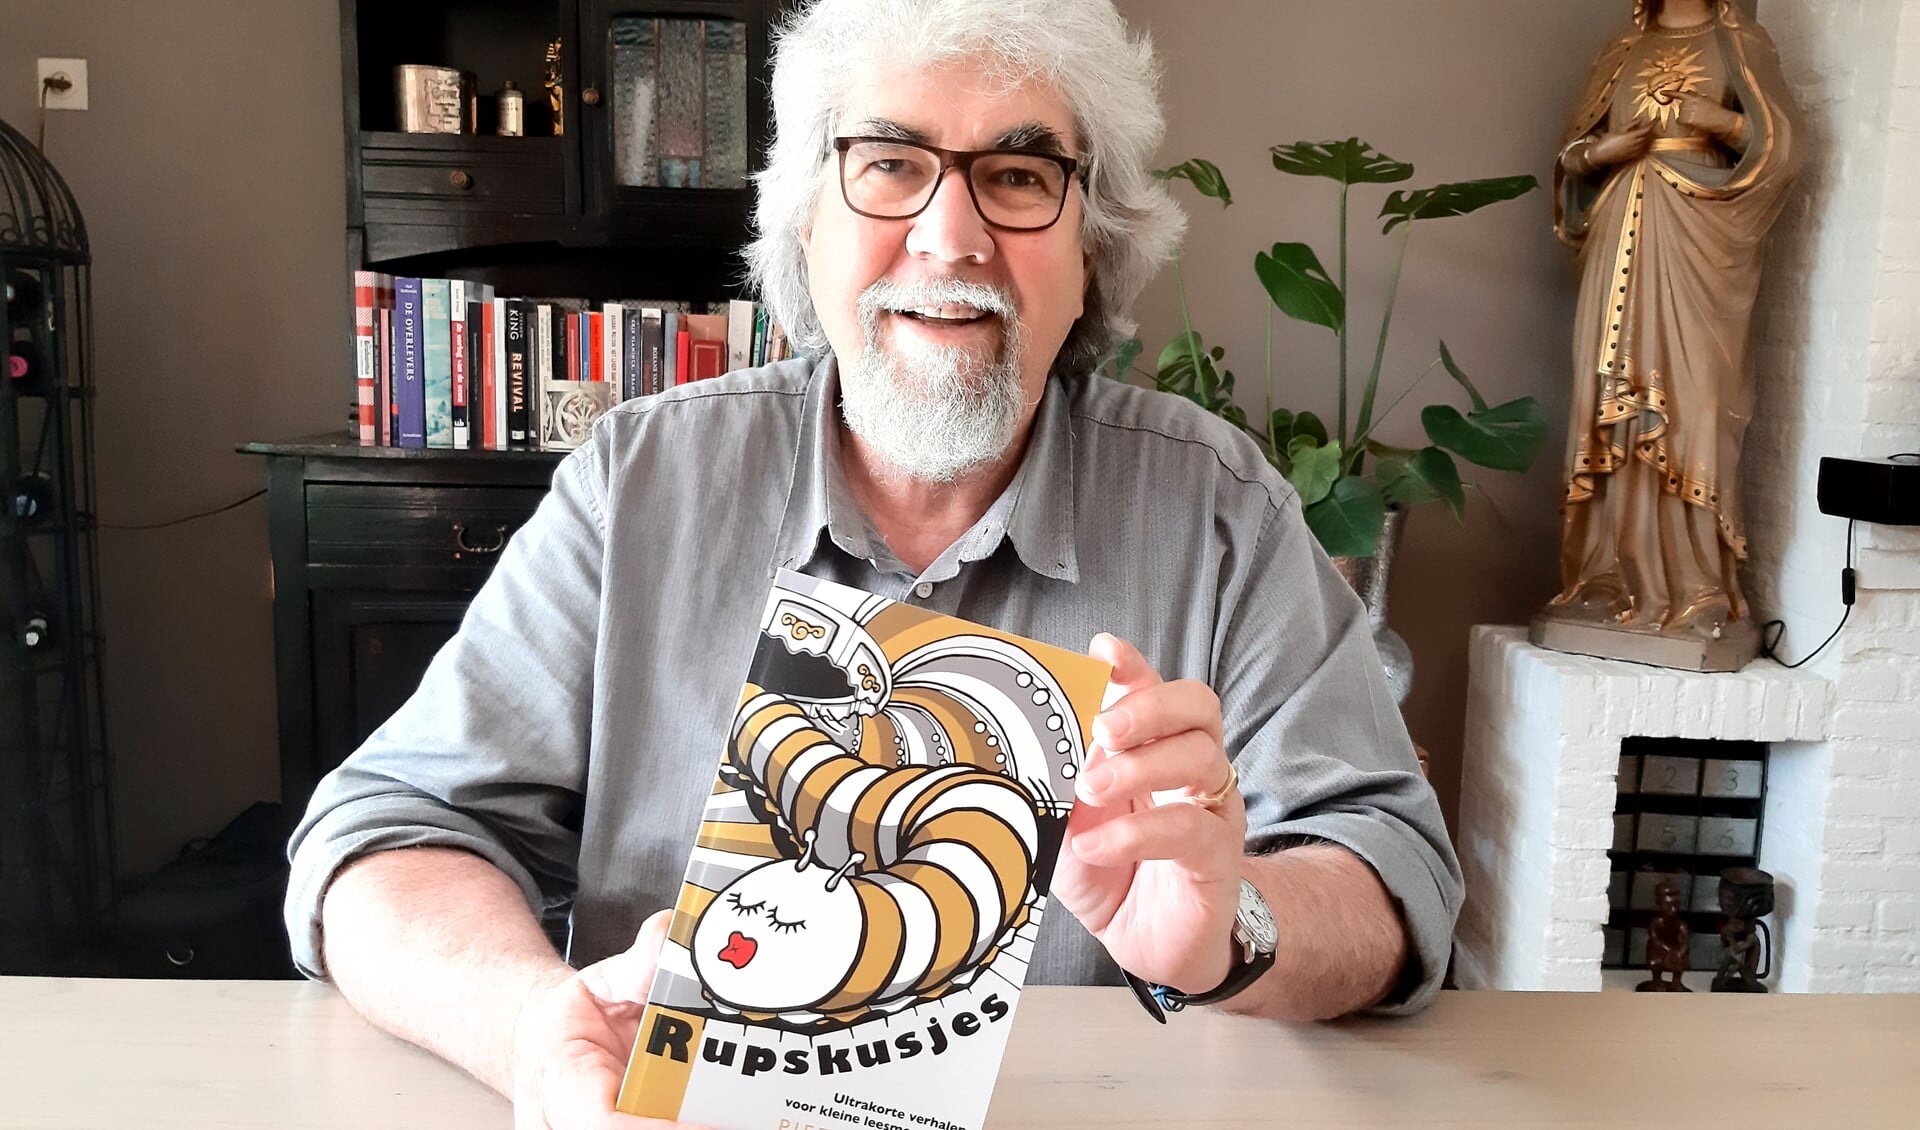 Sinds 2013 speelt Piet Snijders met een nieuw genre, ultrakorte verhalen, die hij nu in het boek Rupskusjes heeft gebundeld.